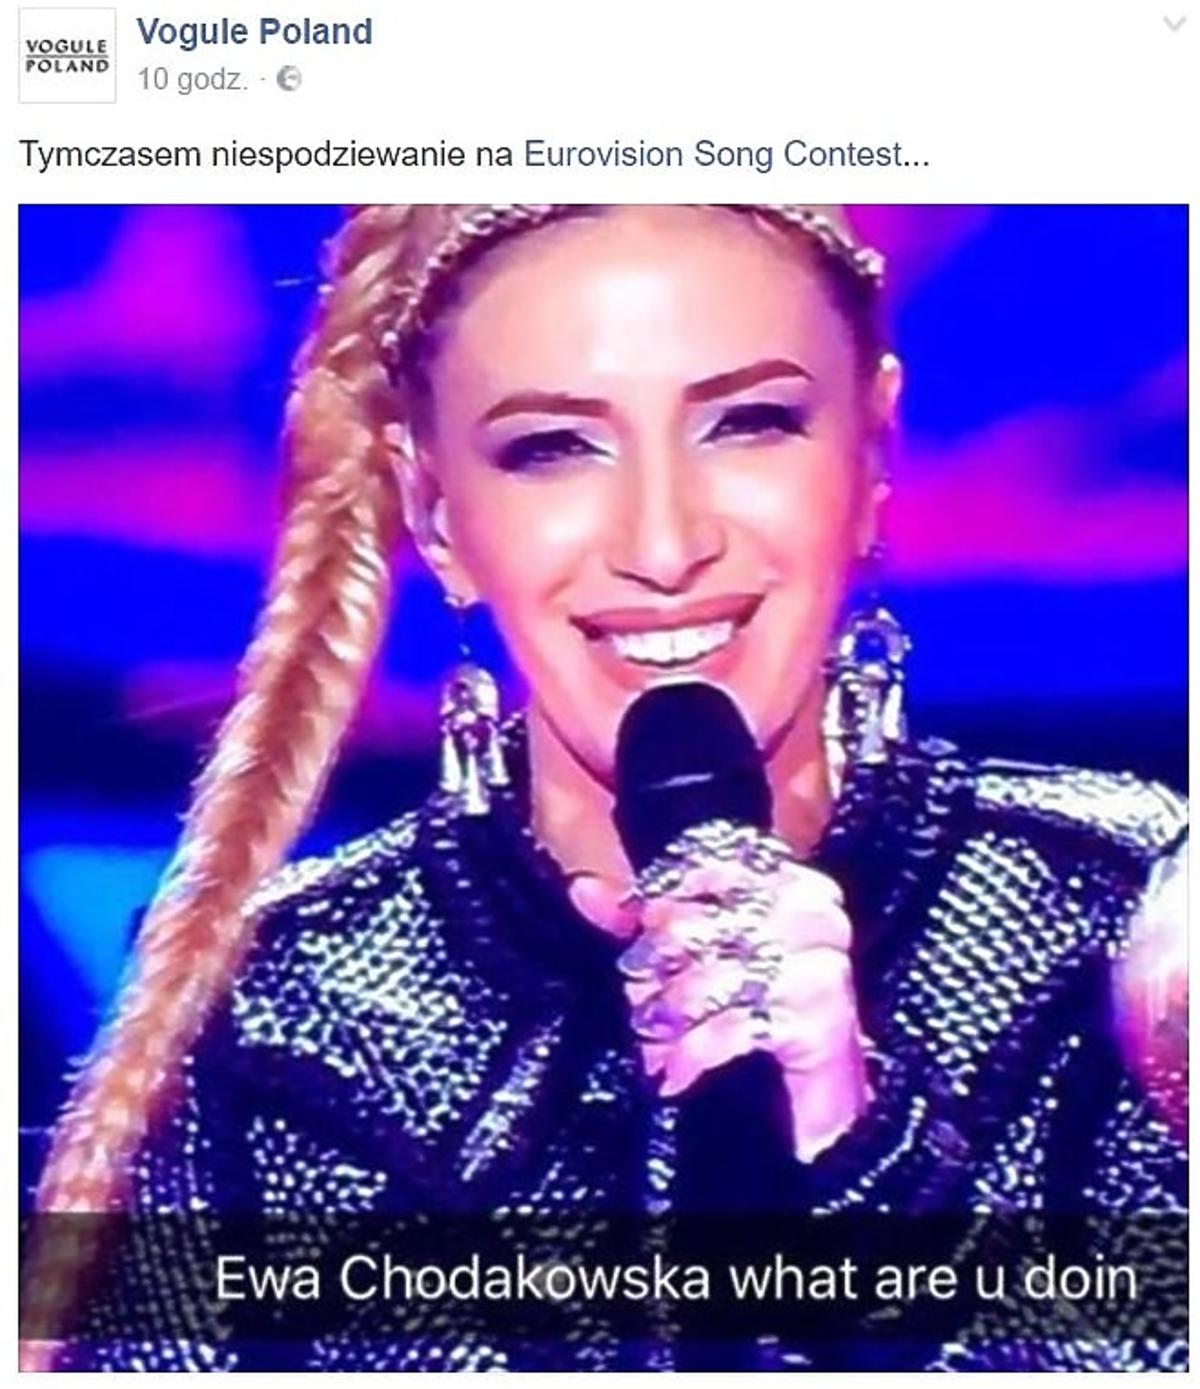 Sobowtór Ewy Chodakowskiej